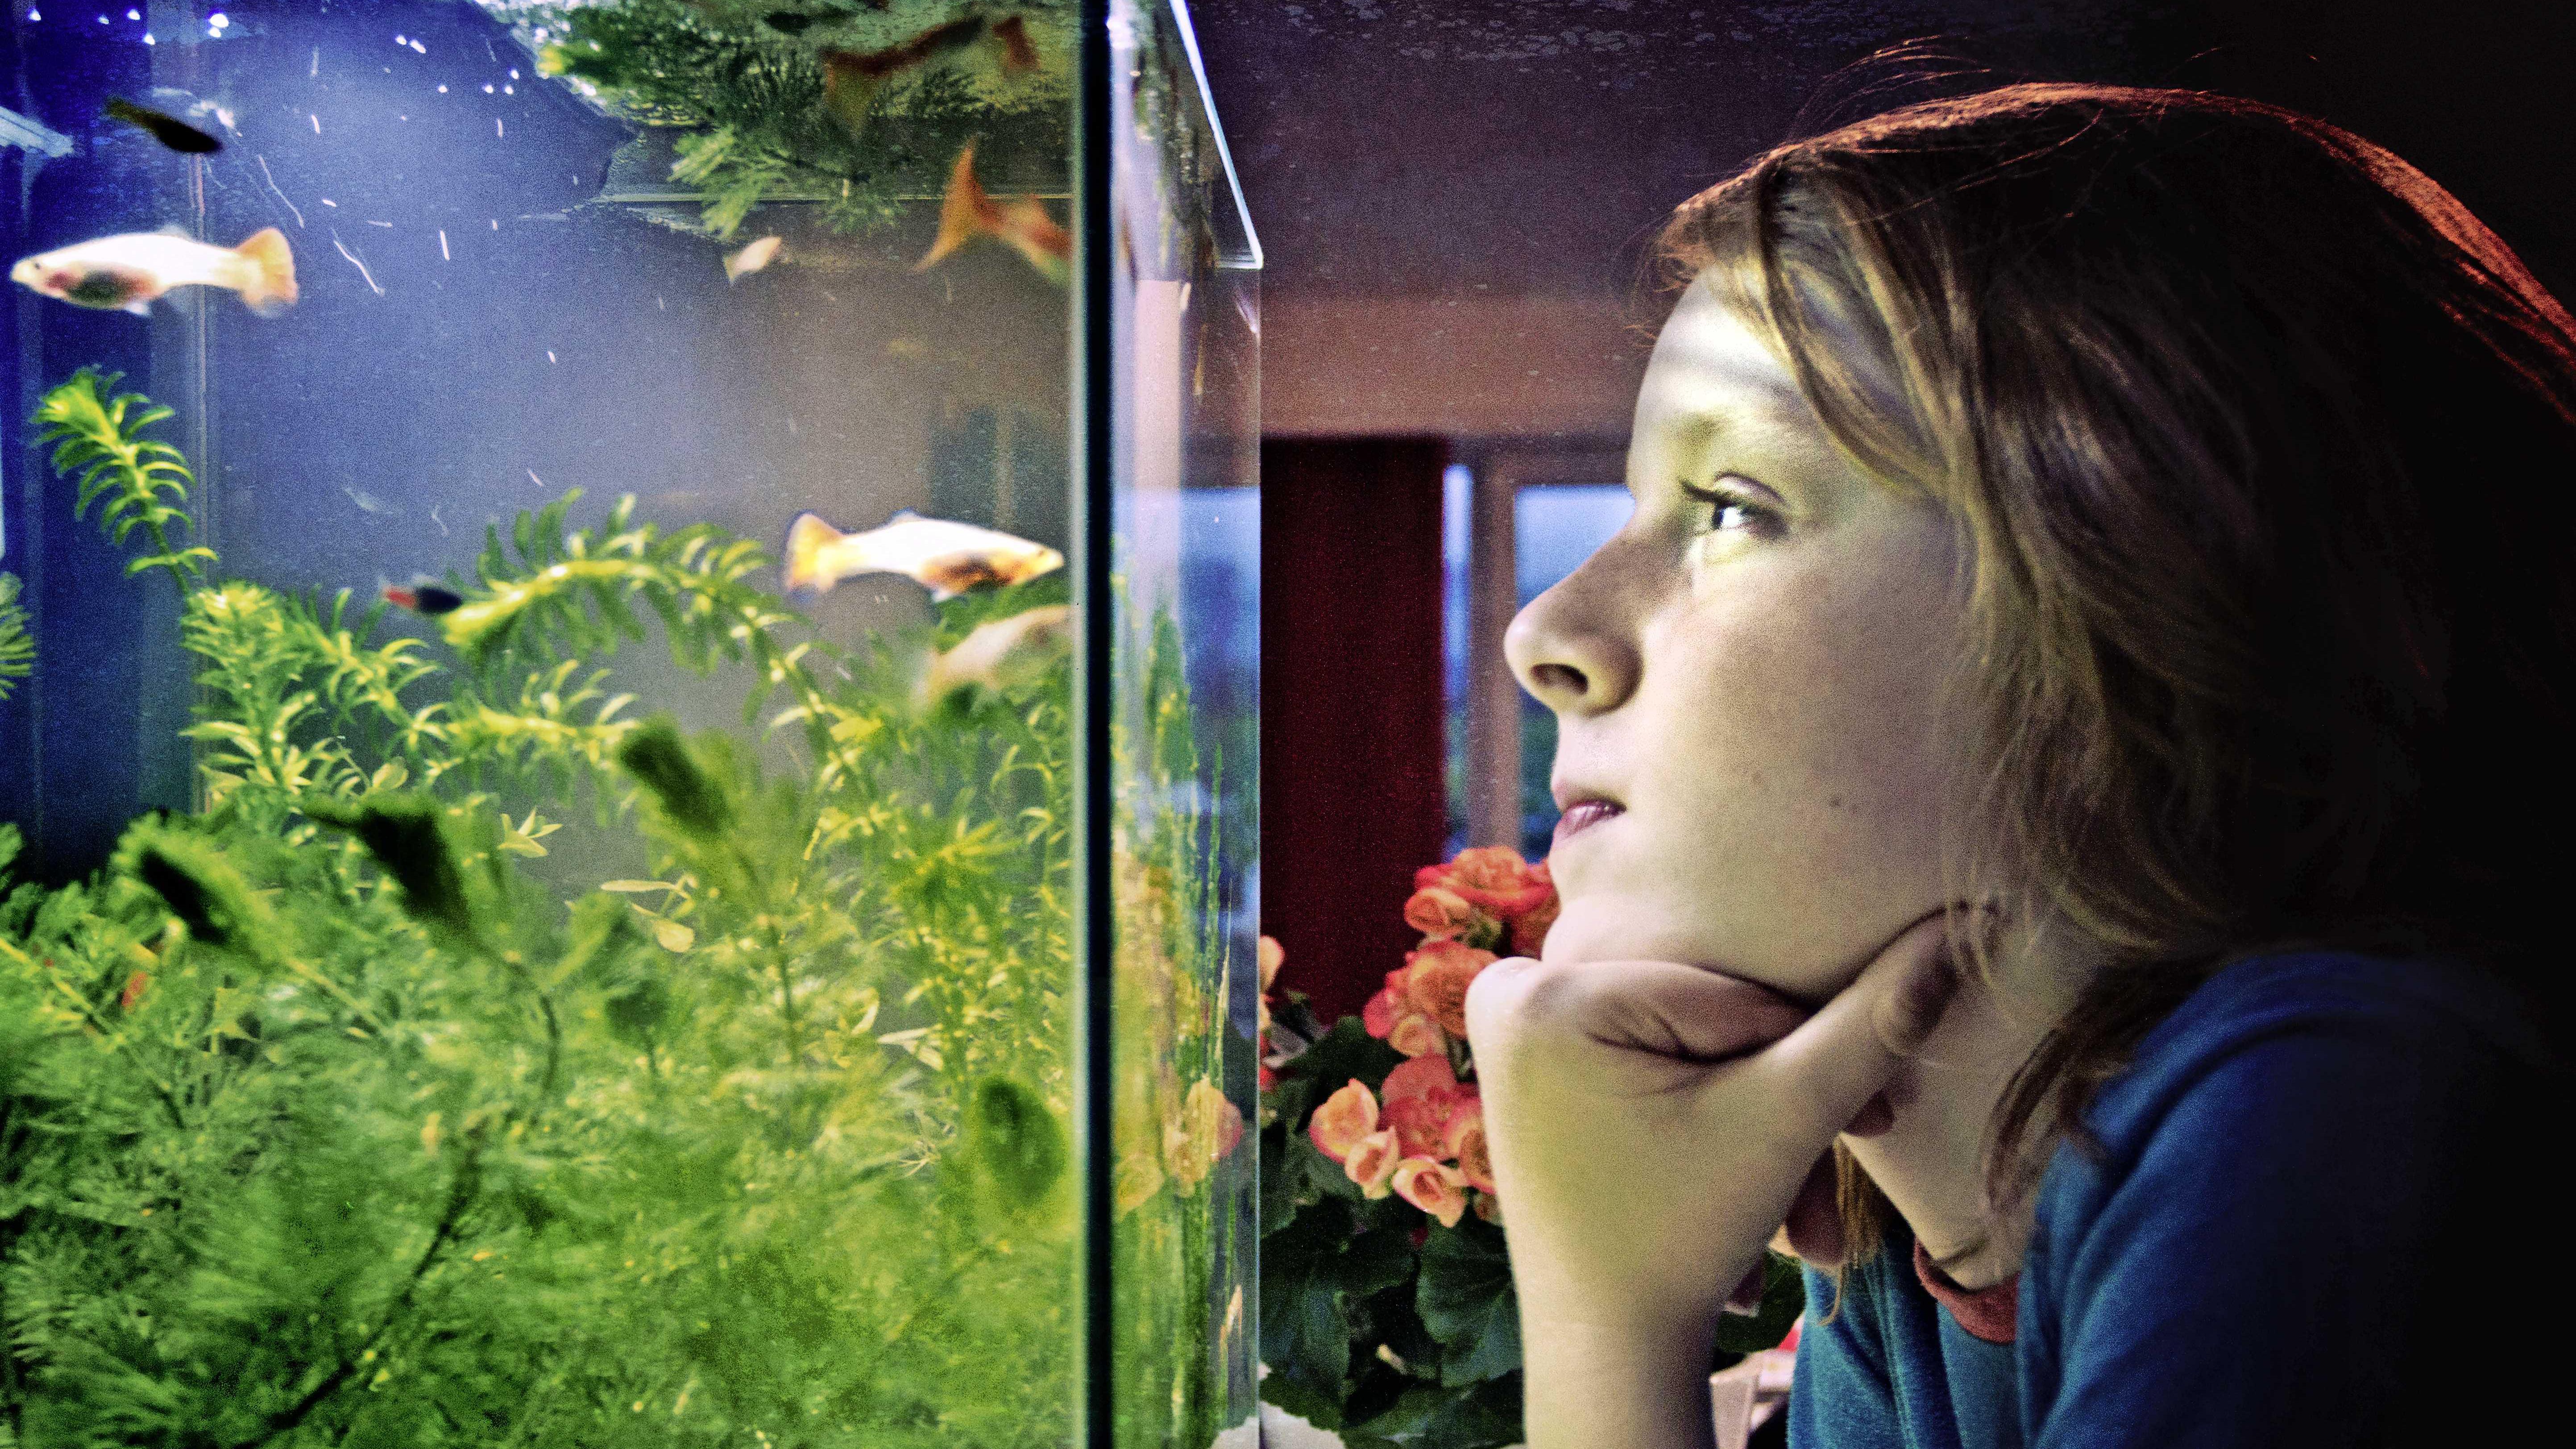 Аквариум наблюдать. Аквариум (Fish Tank) 2009. Человек в аквариуме. Фотосессия с рыбкой в аквариуме. Девушка в аквариуме.